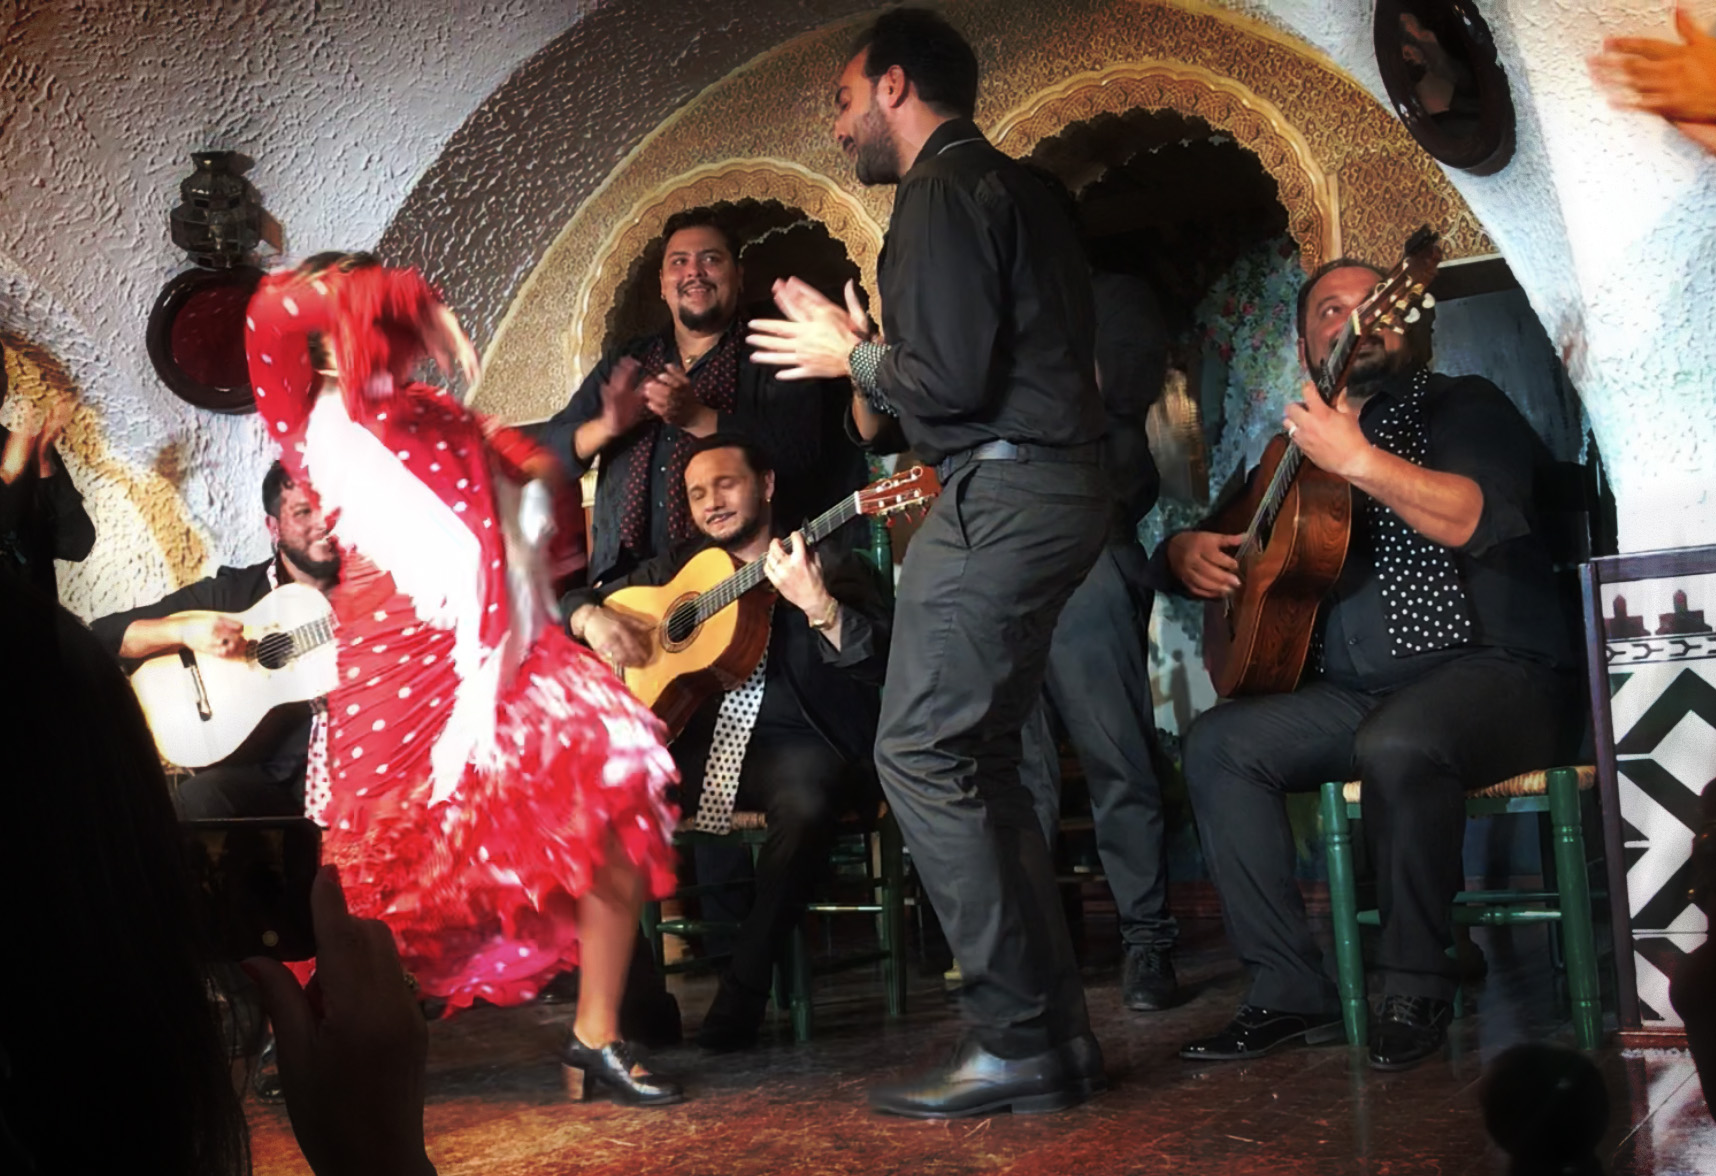 Show de Flamenco em Barcelona